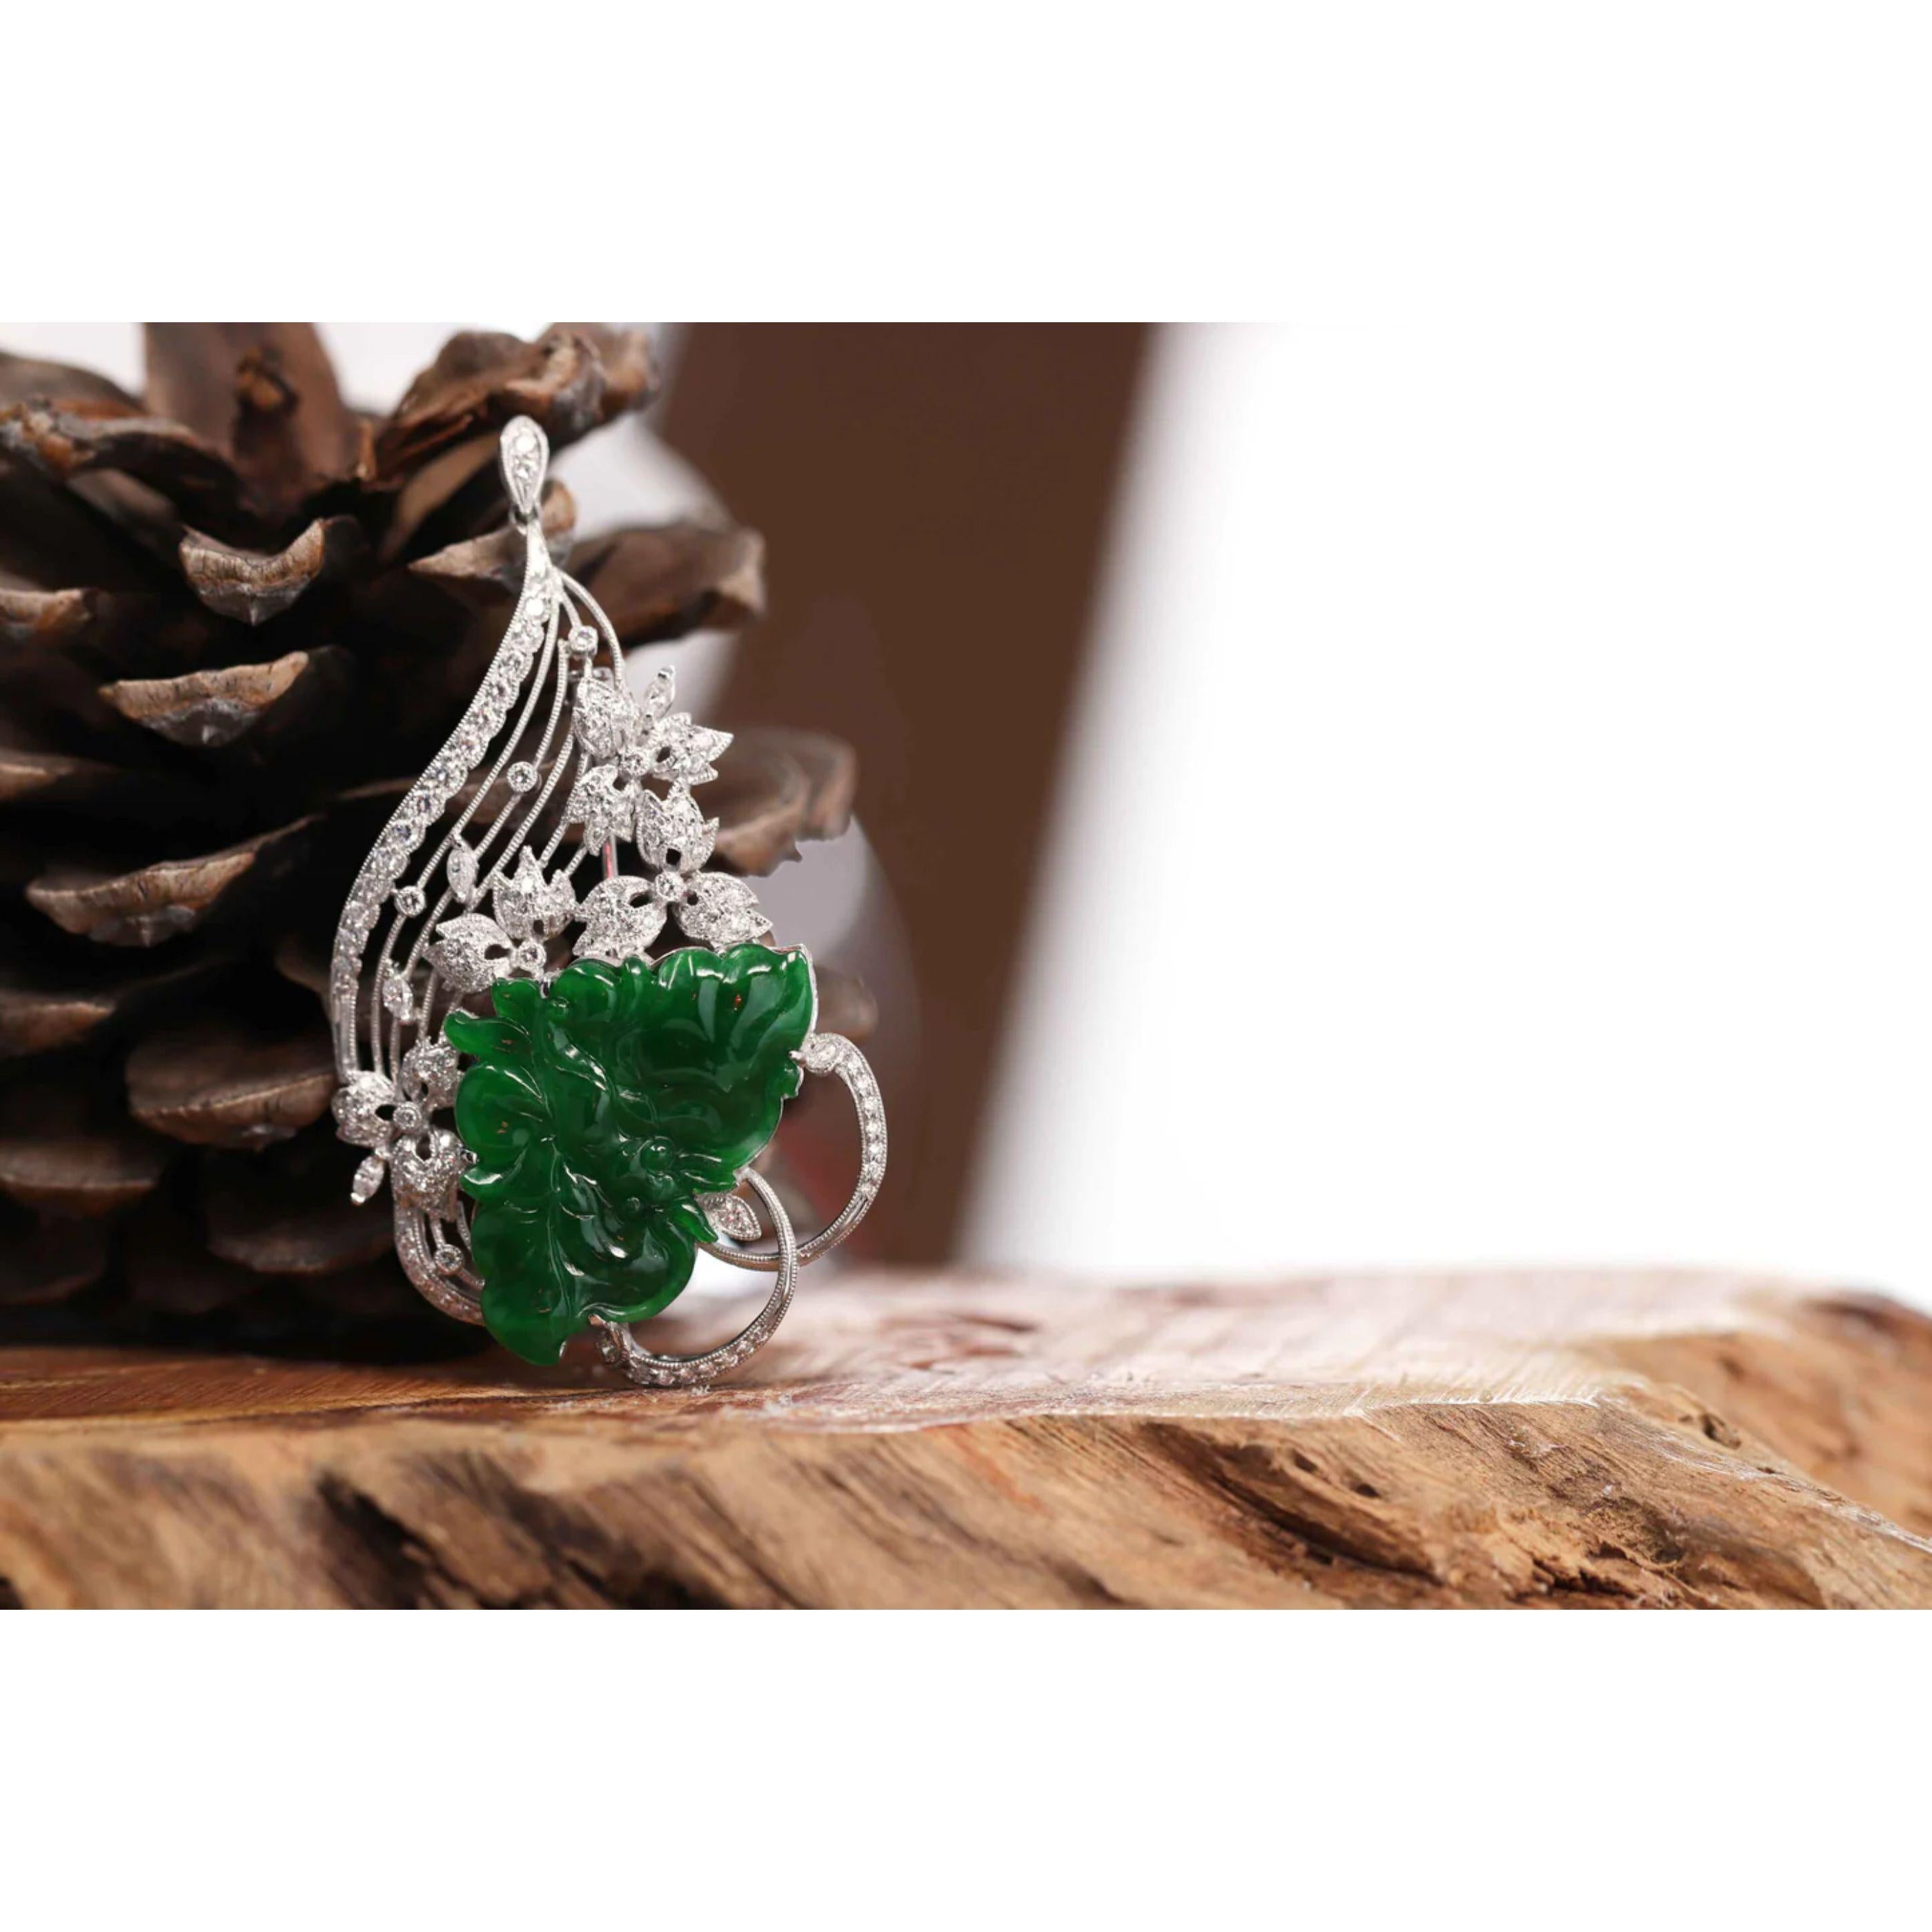 * DESIGNKONZEPT--- Diese Halskette ist aus echter kaiserlicher grüner burmesischer Jadeit-Jade gefertigt. Das Design wurde durch die schlichte, aber elegante Form eines Schmetterlings inspiriert. Steht für Ganzheitlichkeit, Vollständigkeit und